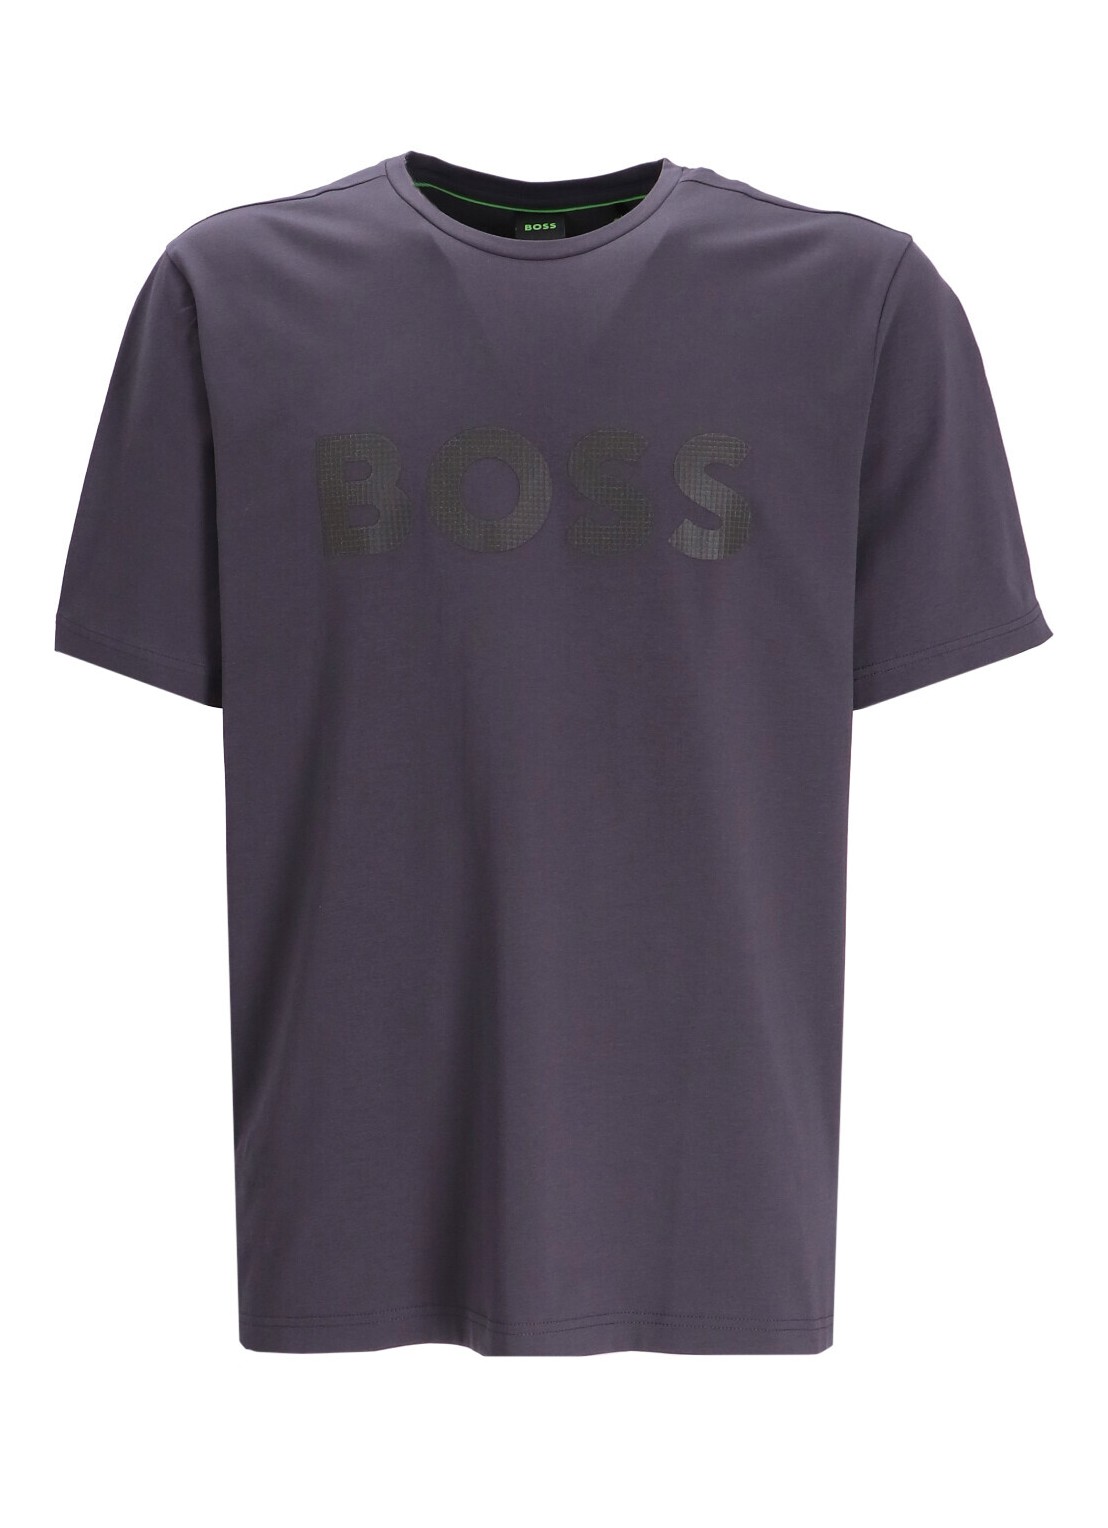 Camiseta boss t-shirt man tee 8 50501195 027 talla L
 